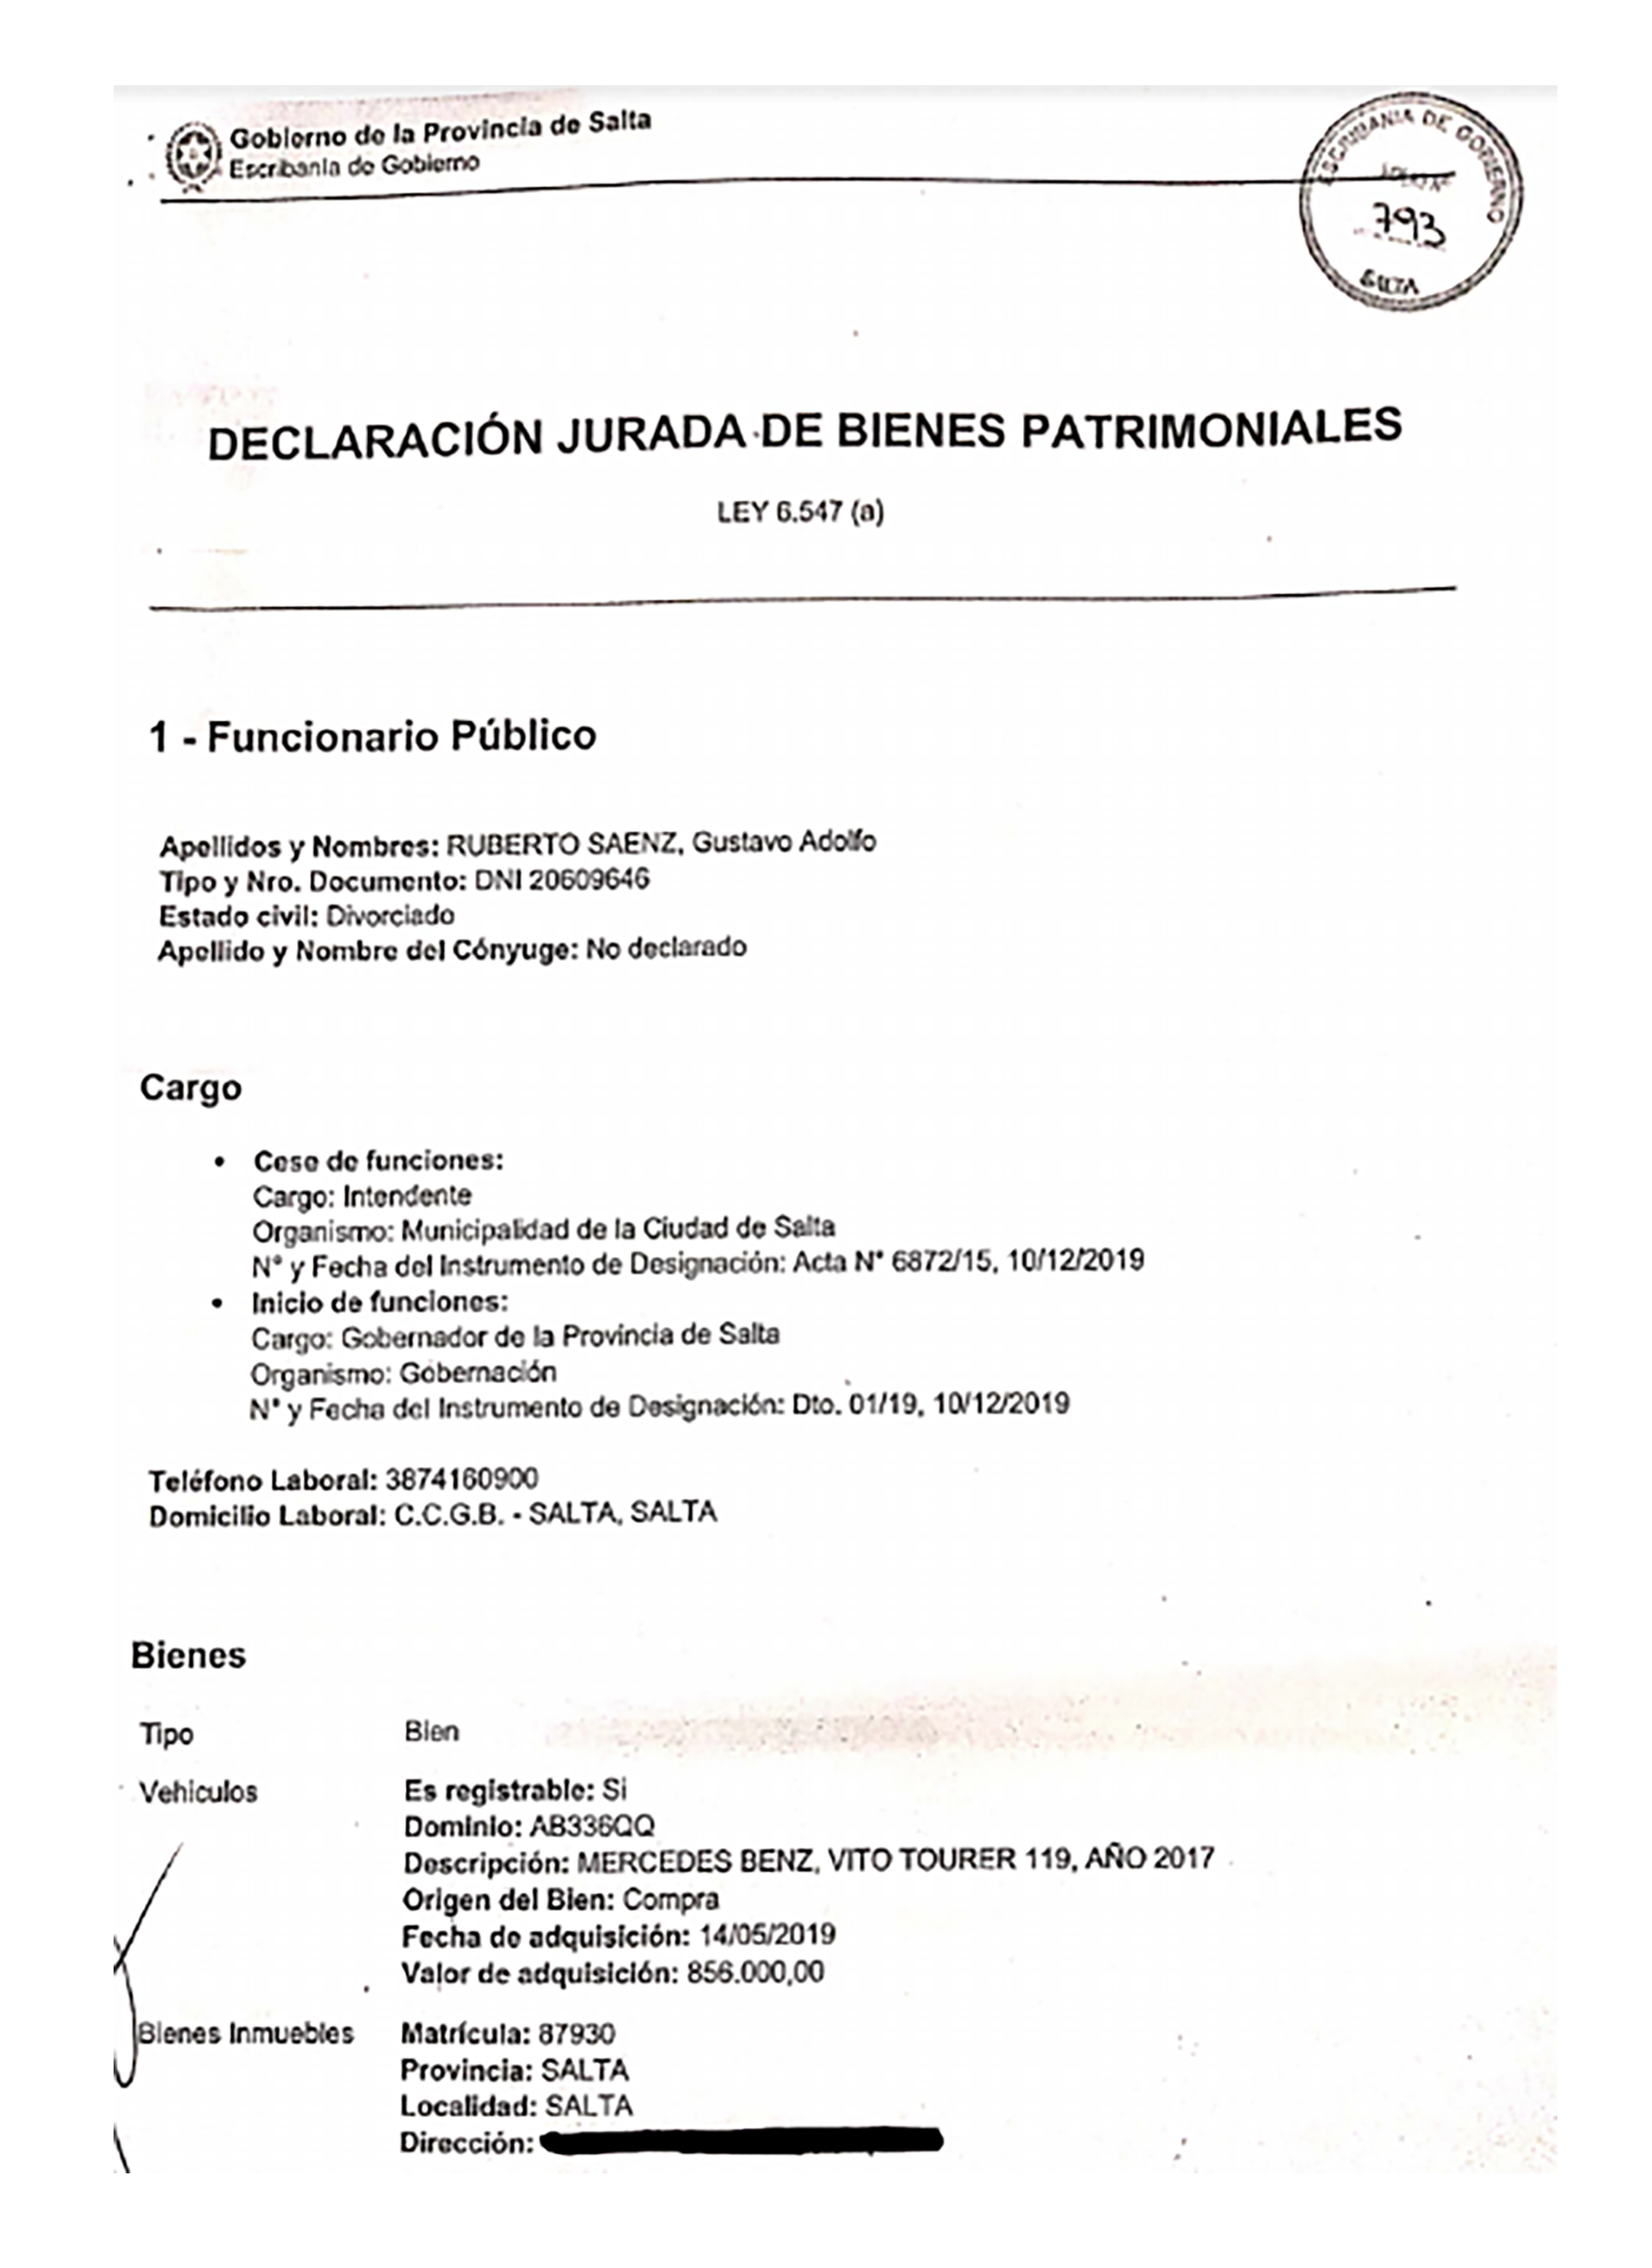 Primera hoja de la DDJJ que presentó el gobernador de Salta, Gustavo Sáenz, con el detalle de sus bienes, que le envió a Infobae.